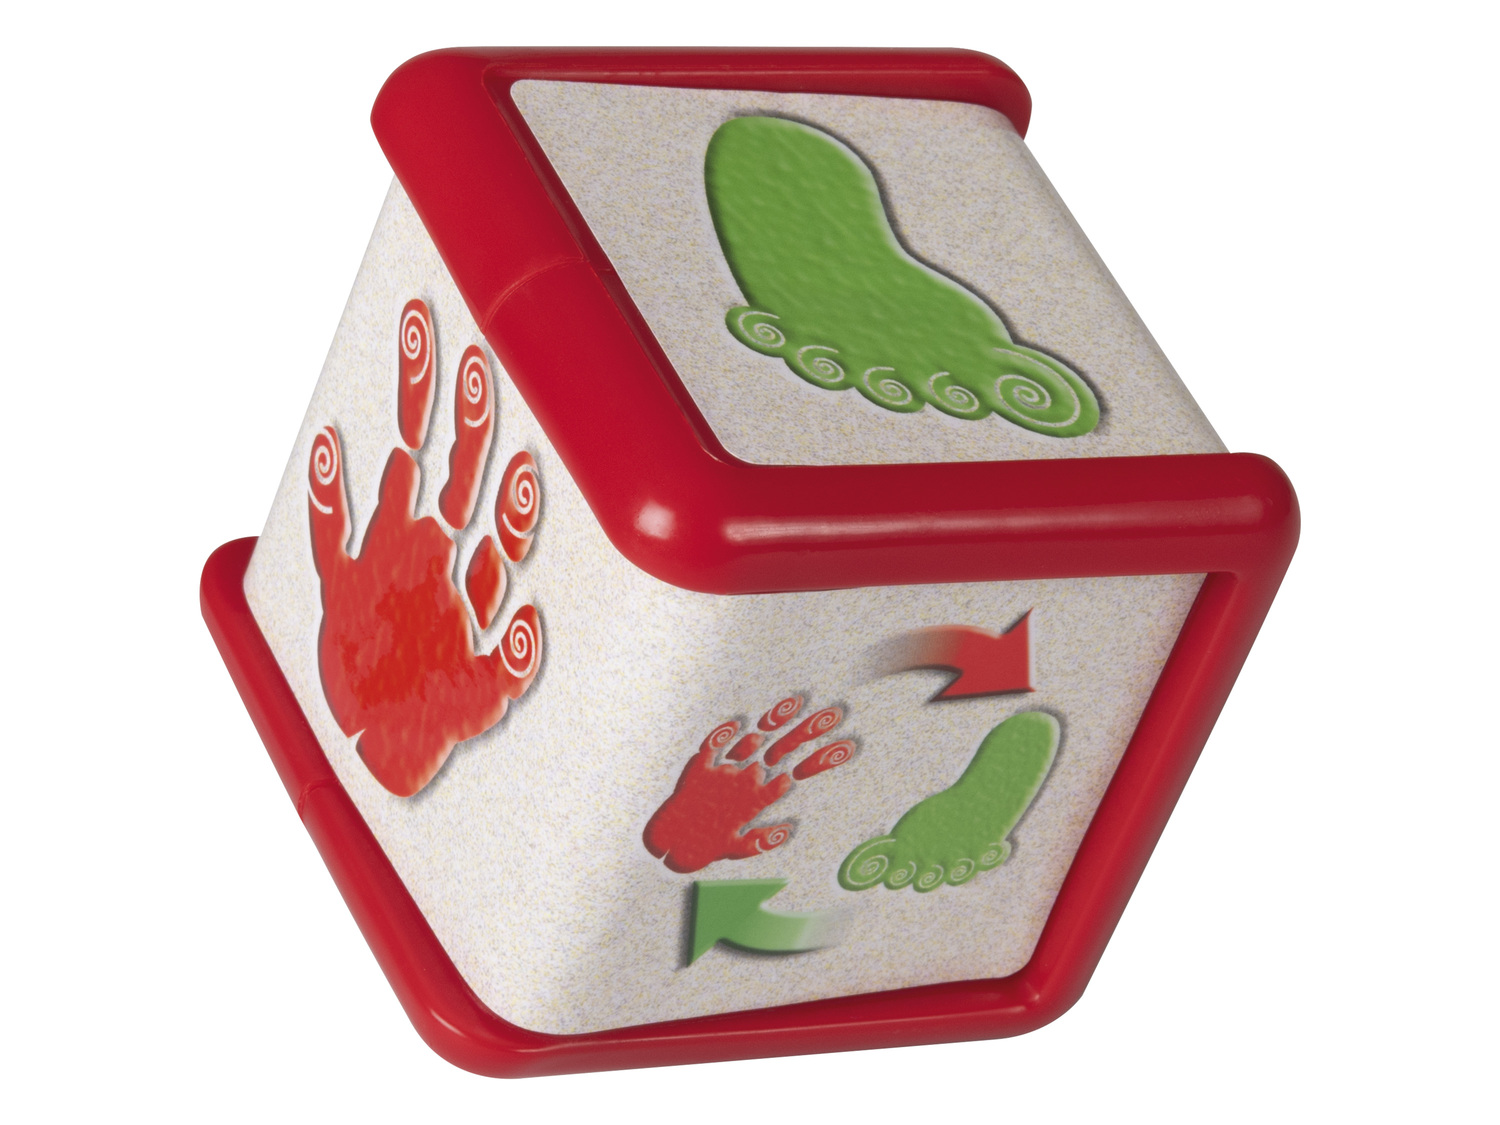 Gra rodzinna Playtive Junior, cena 34,99 PLN 
„Twister” 
- dla 2-4 osób
Opis

- ...